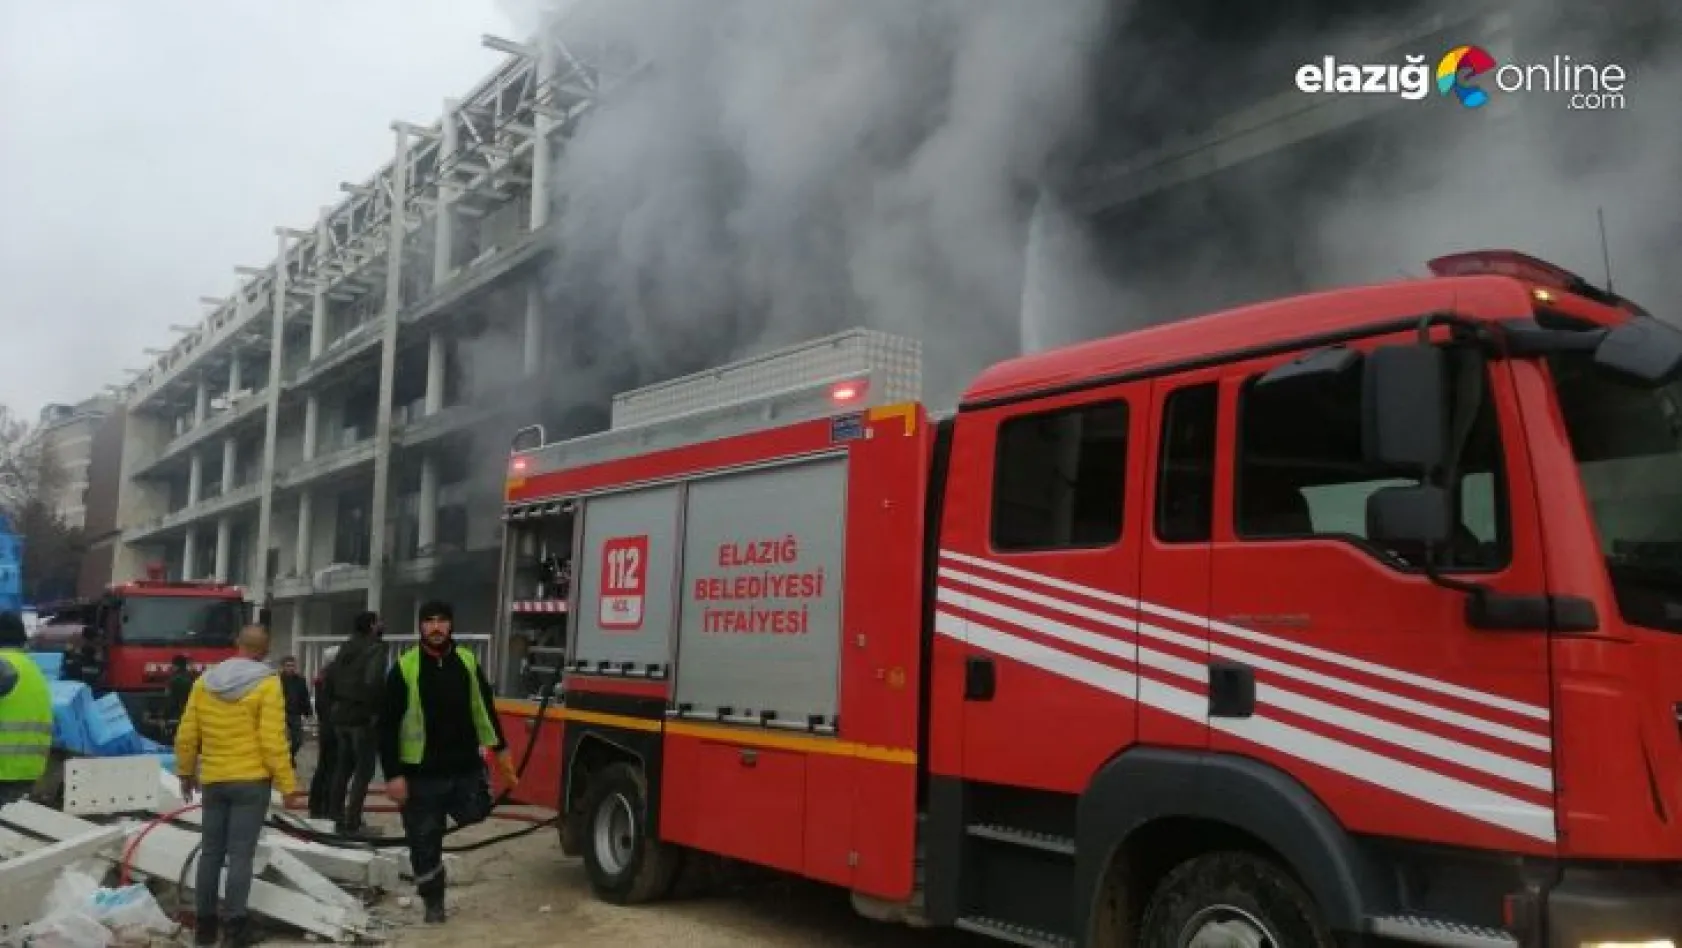 Elazığ Atatürk stadyumunda çıkan yangın söndürüldü